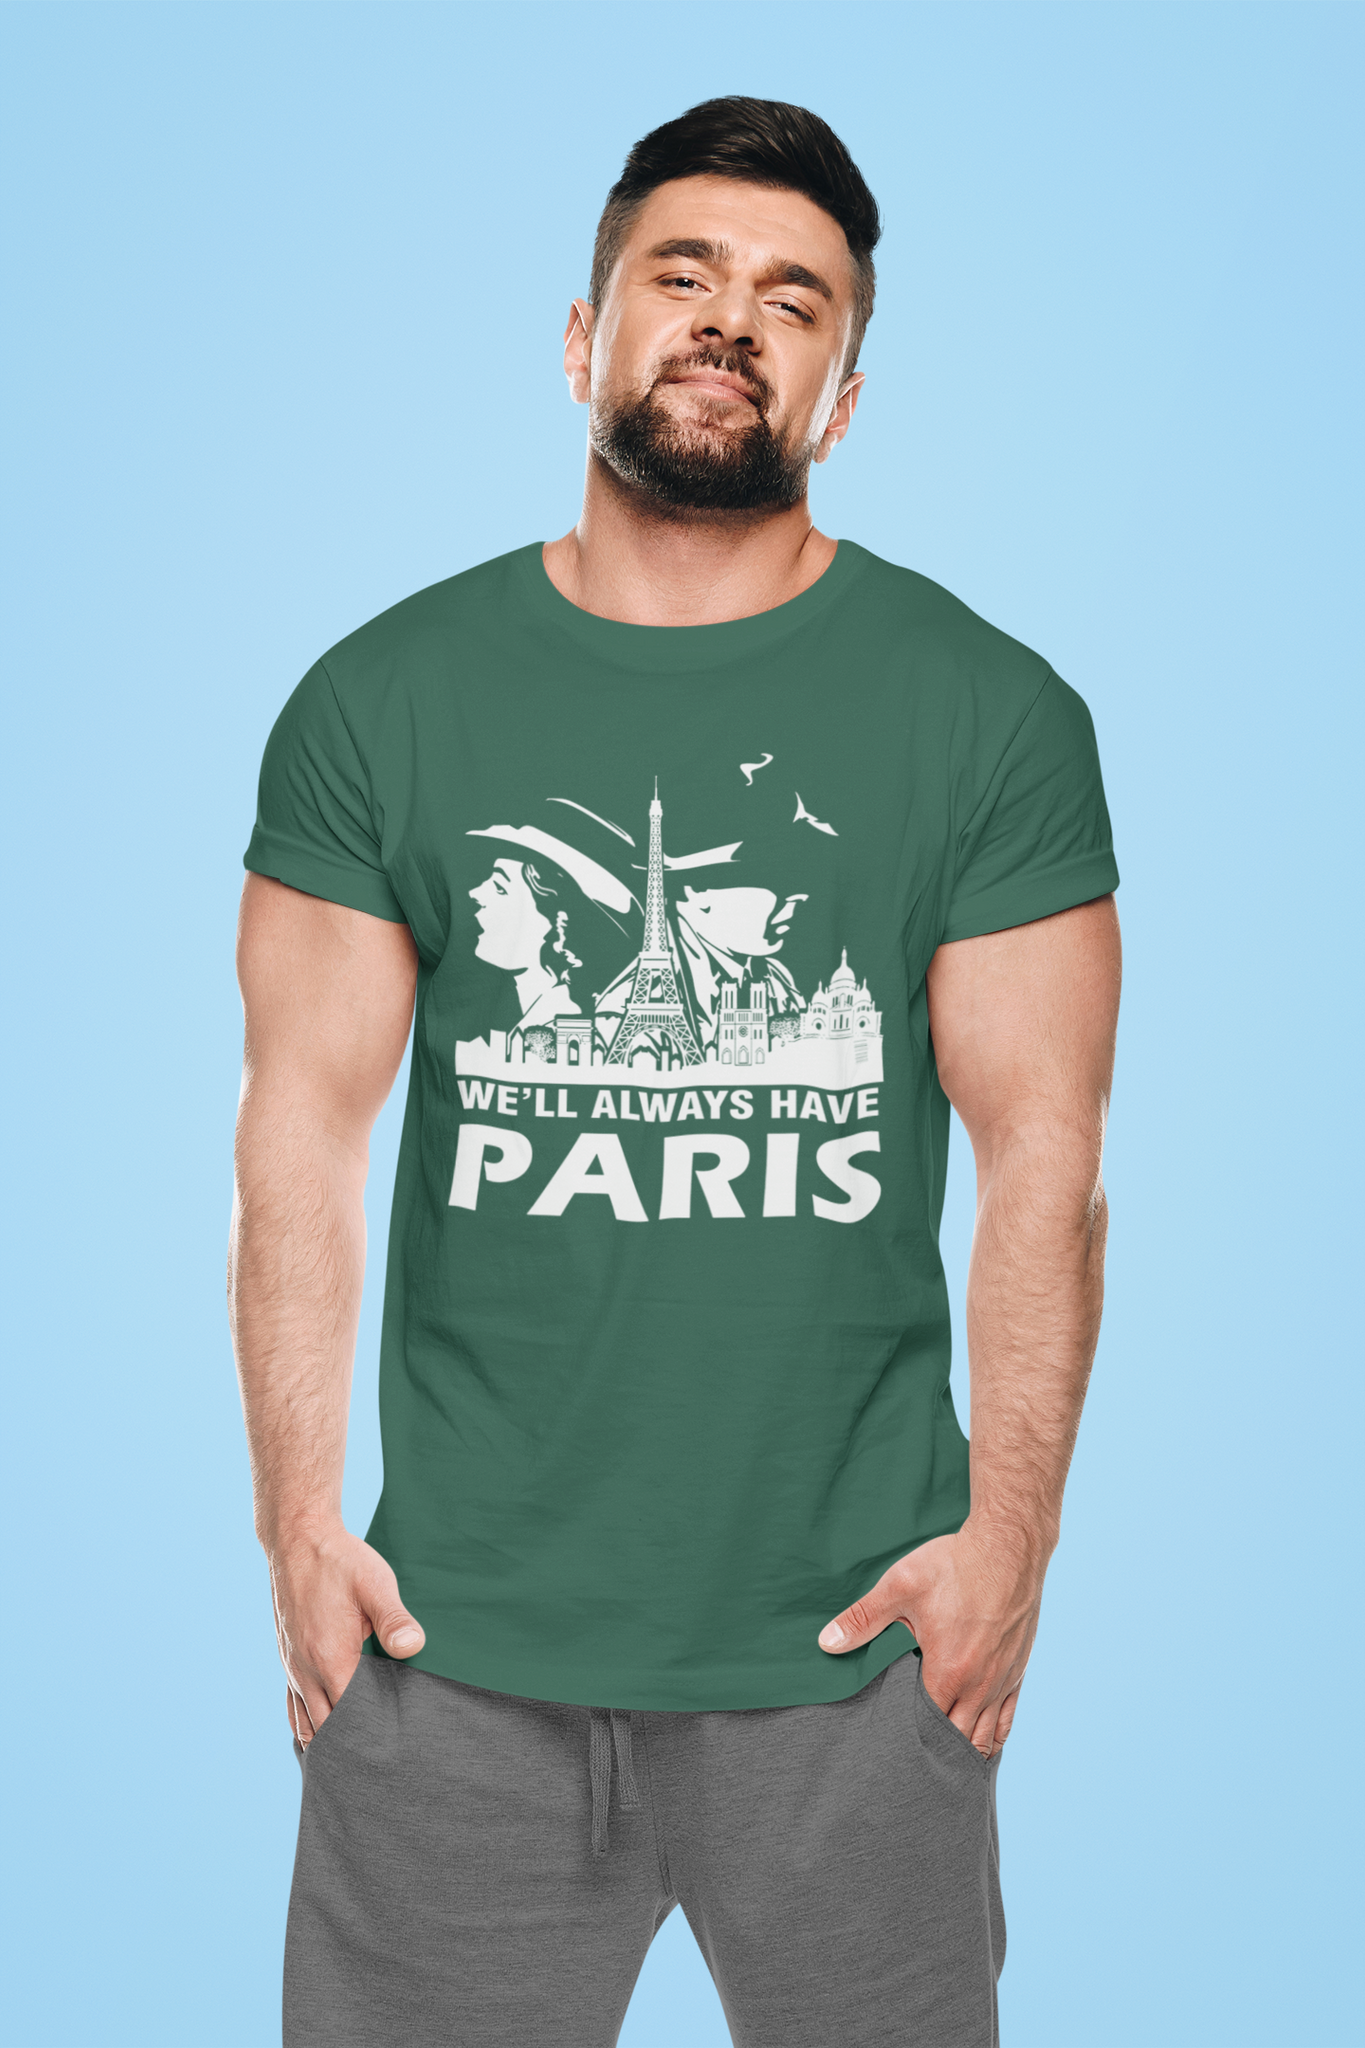 Casablanca T Shirt, Rick Blaine Ilsa Lund T Shirt, Well Always Have Paris Tshirt